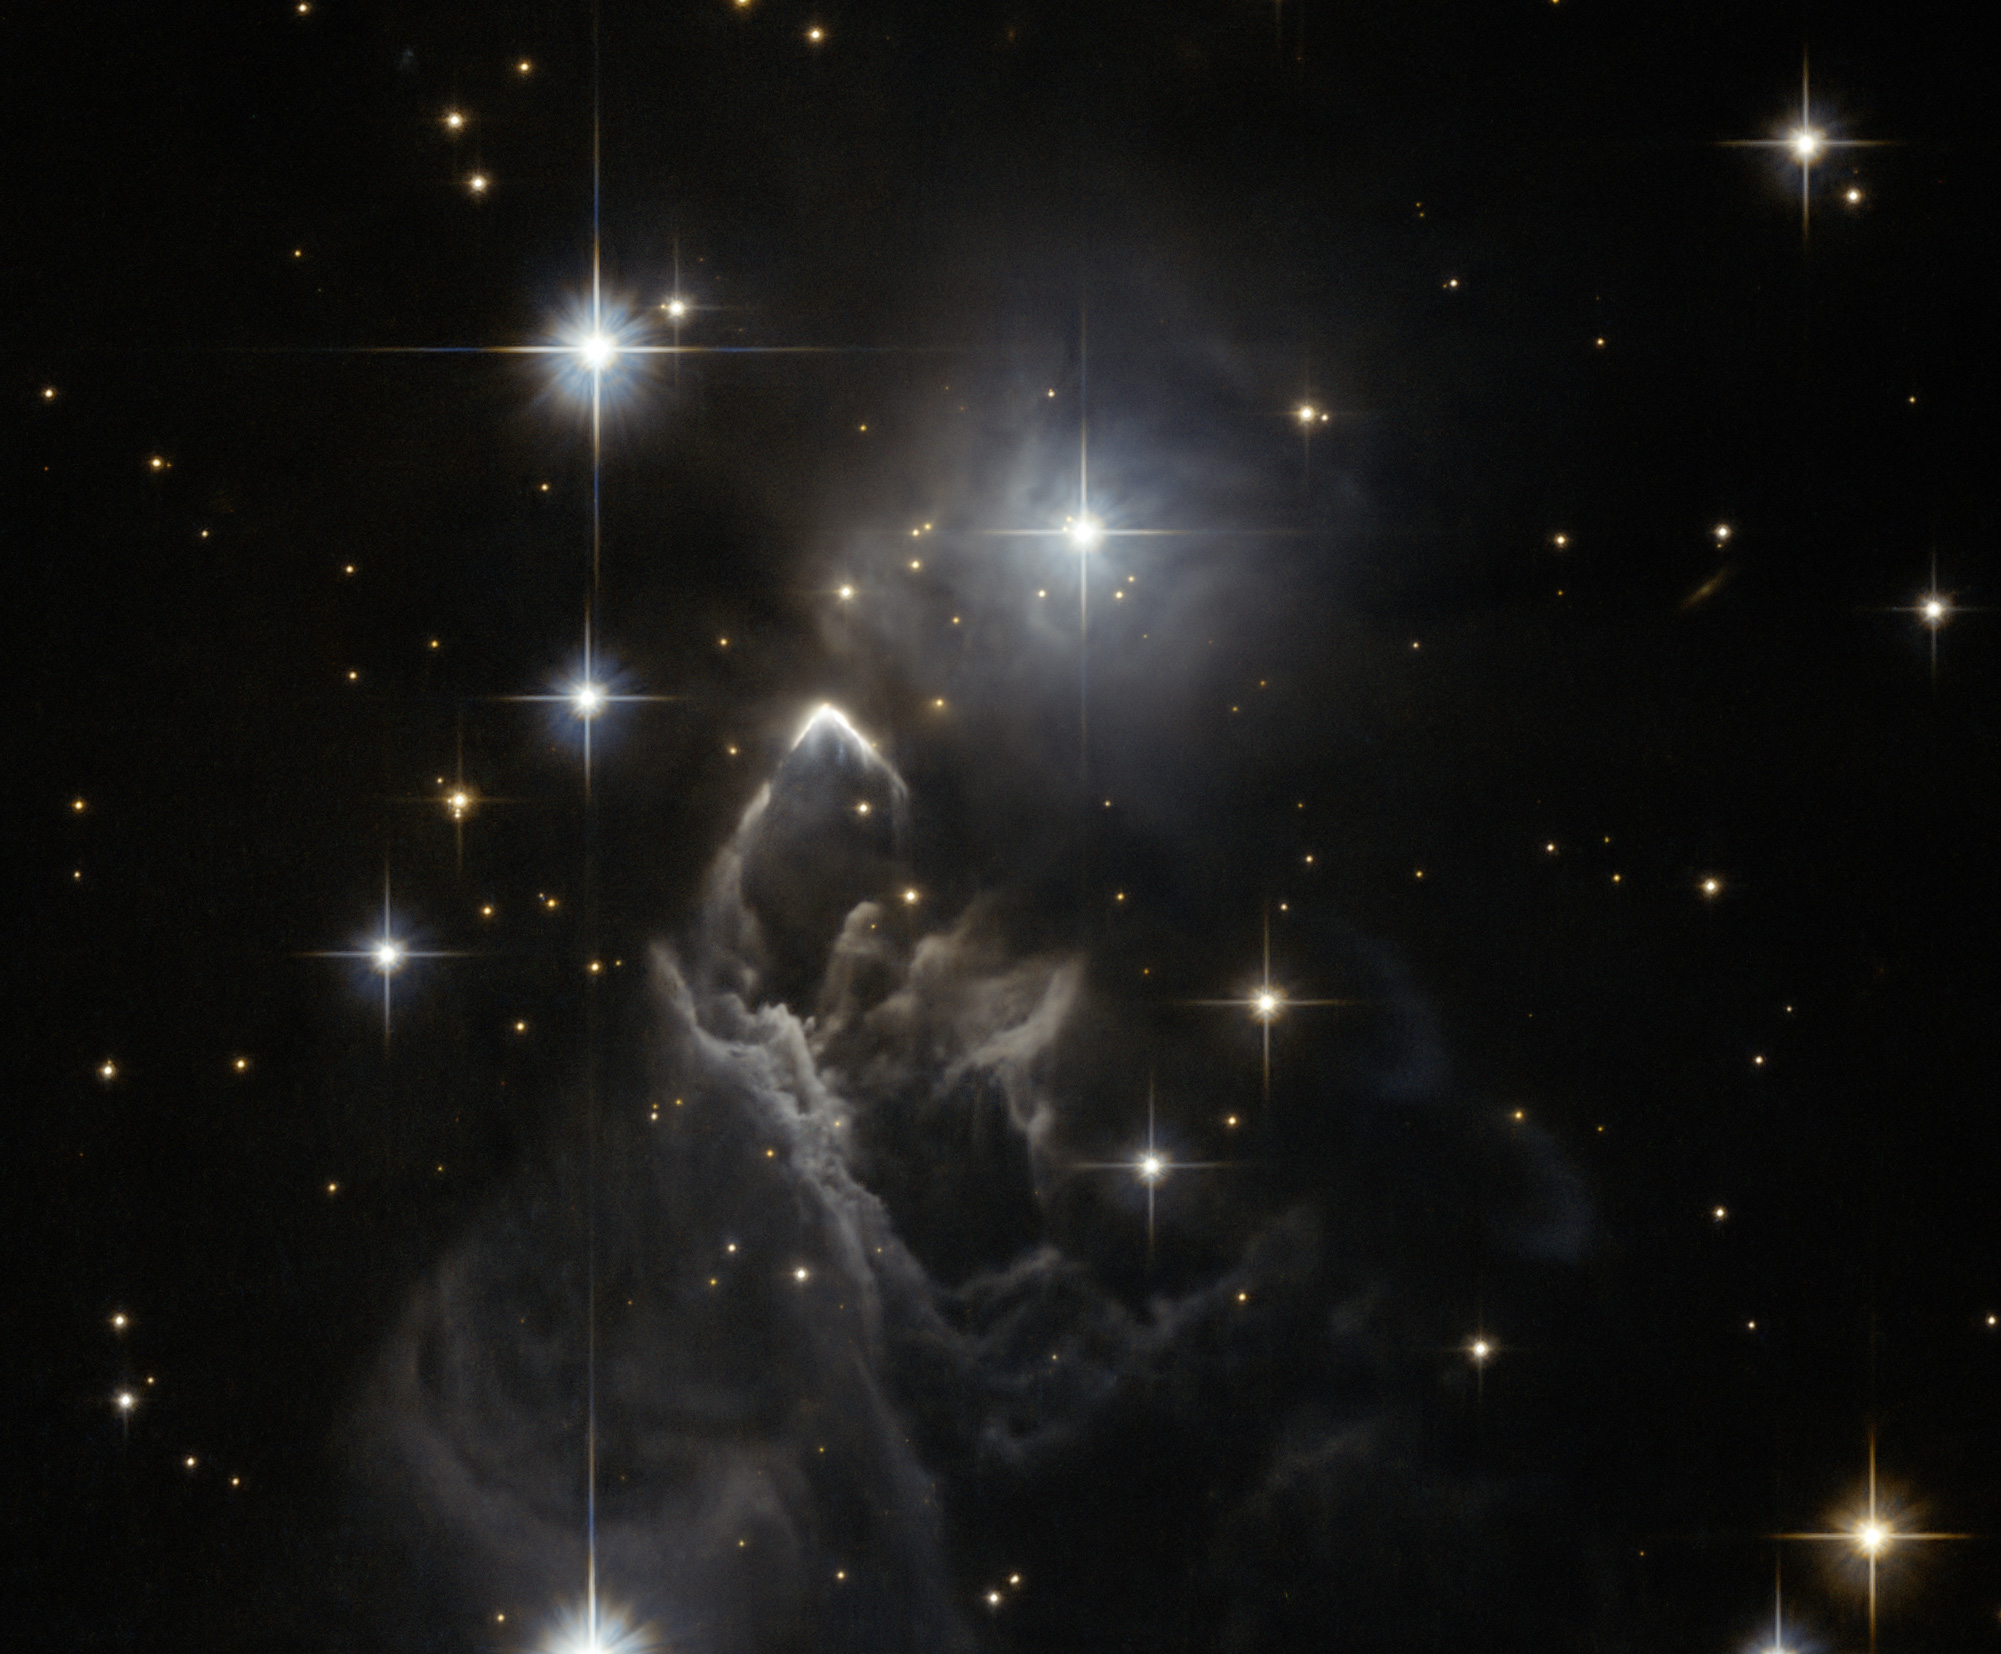 IRAS 05437+2502 A fantasmagórica nuvem estelar revelada